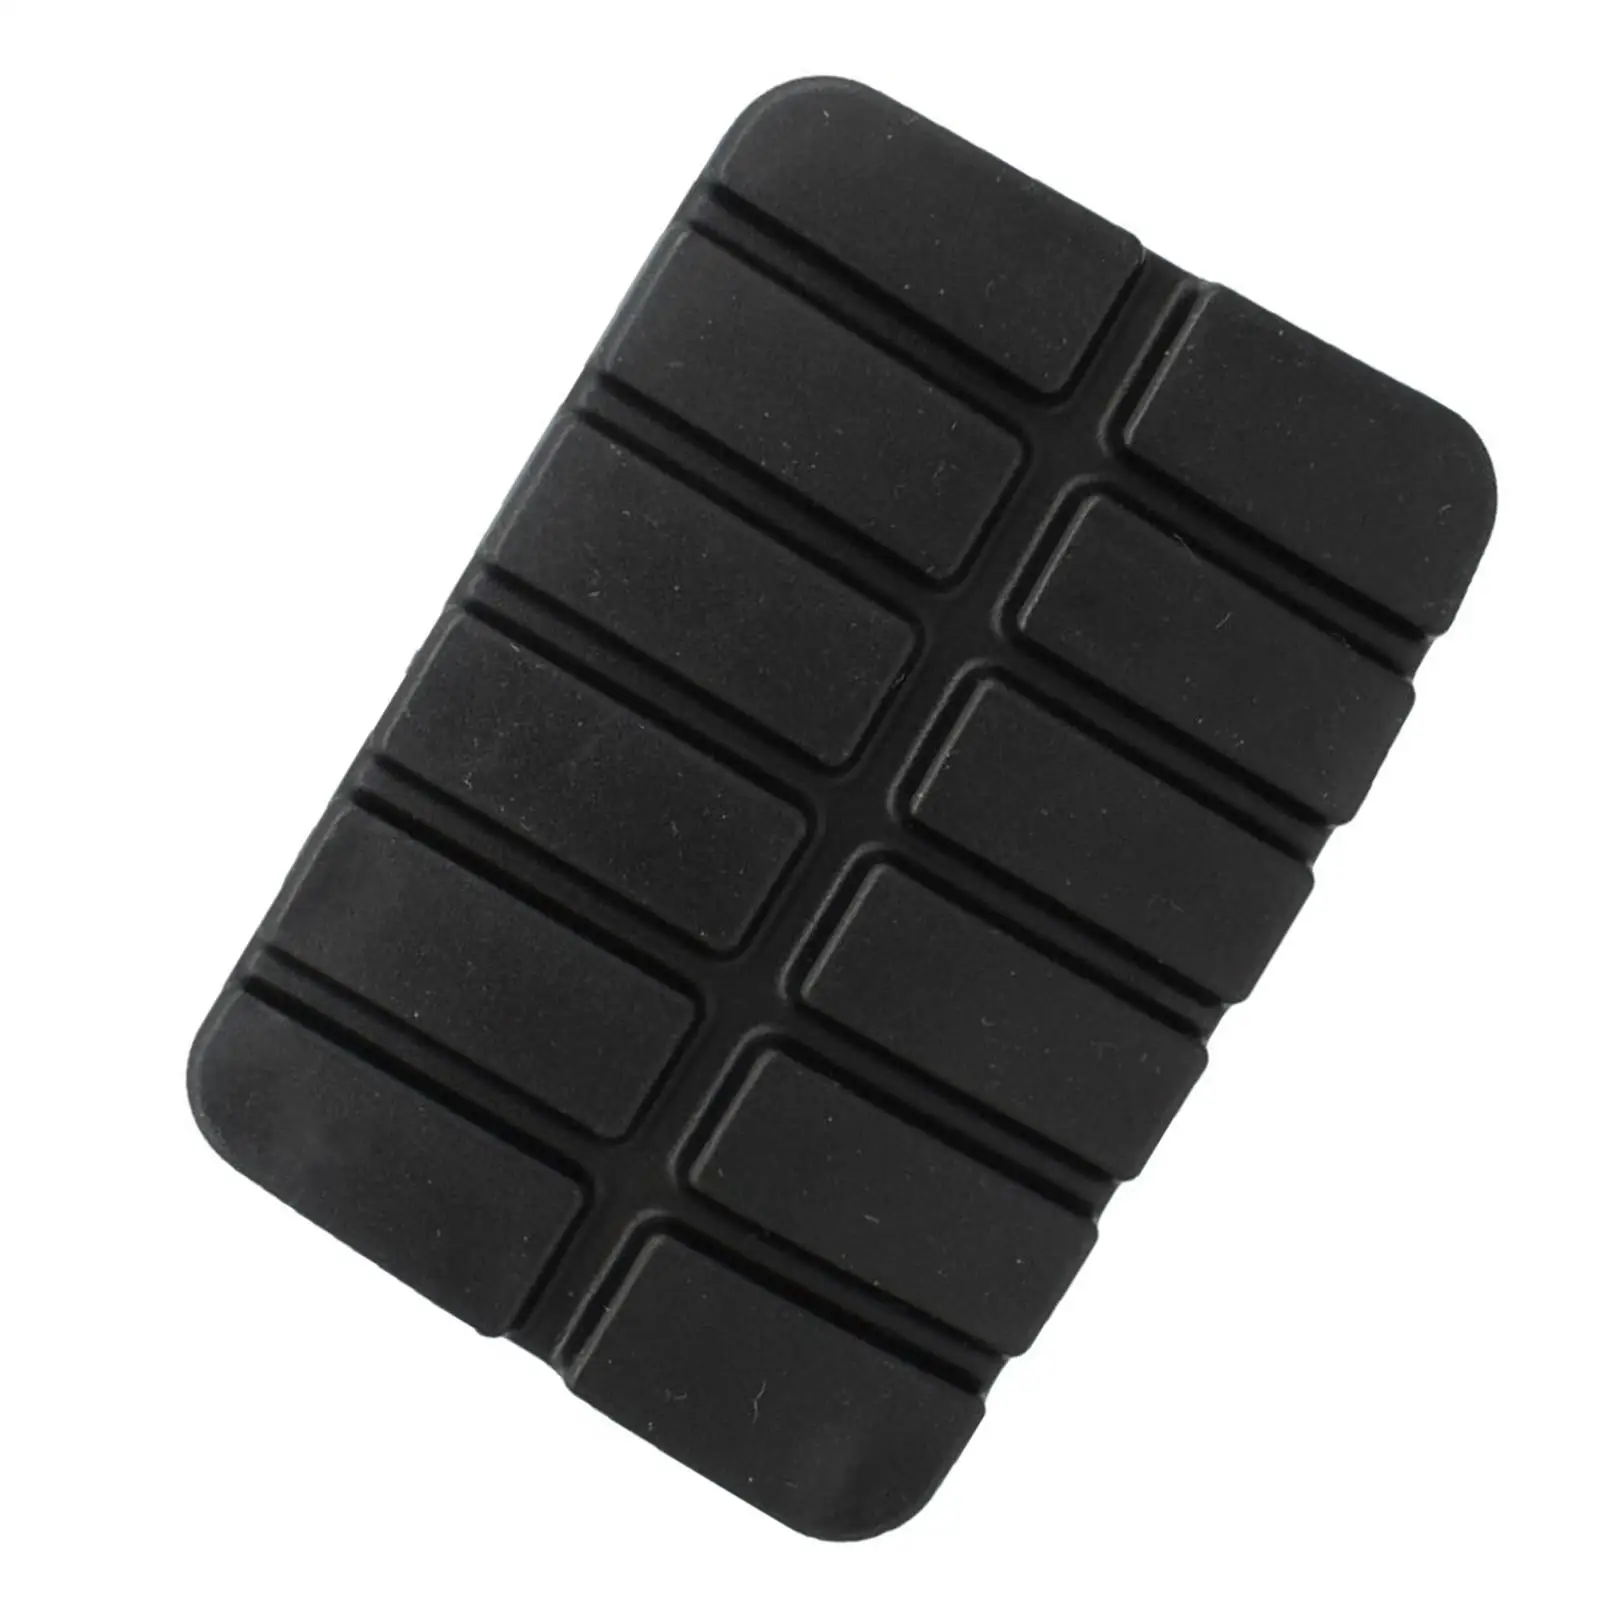 Black Brake Clutch Pedal Rubber Cover 49751-ni110 compatible